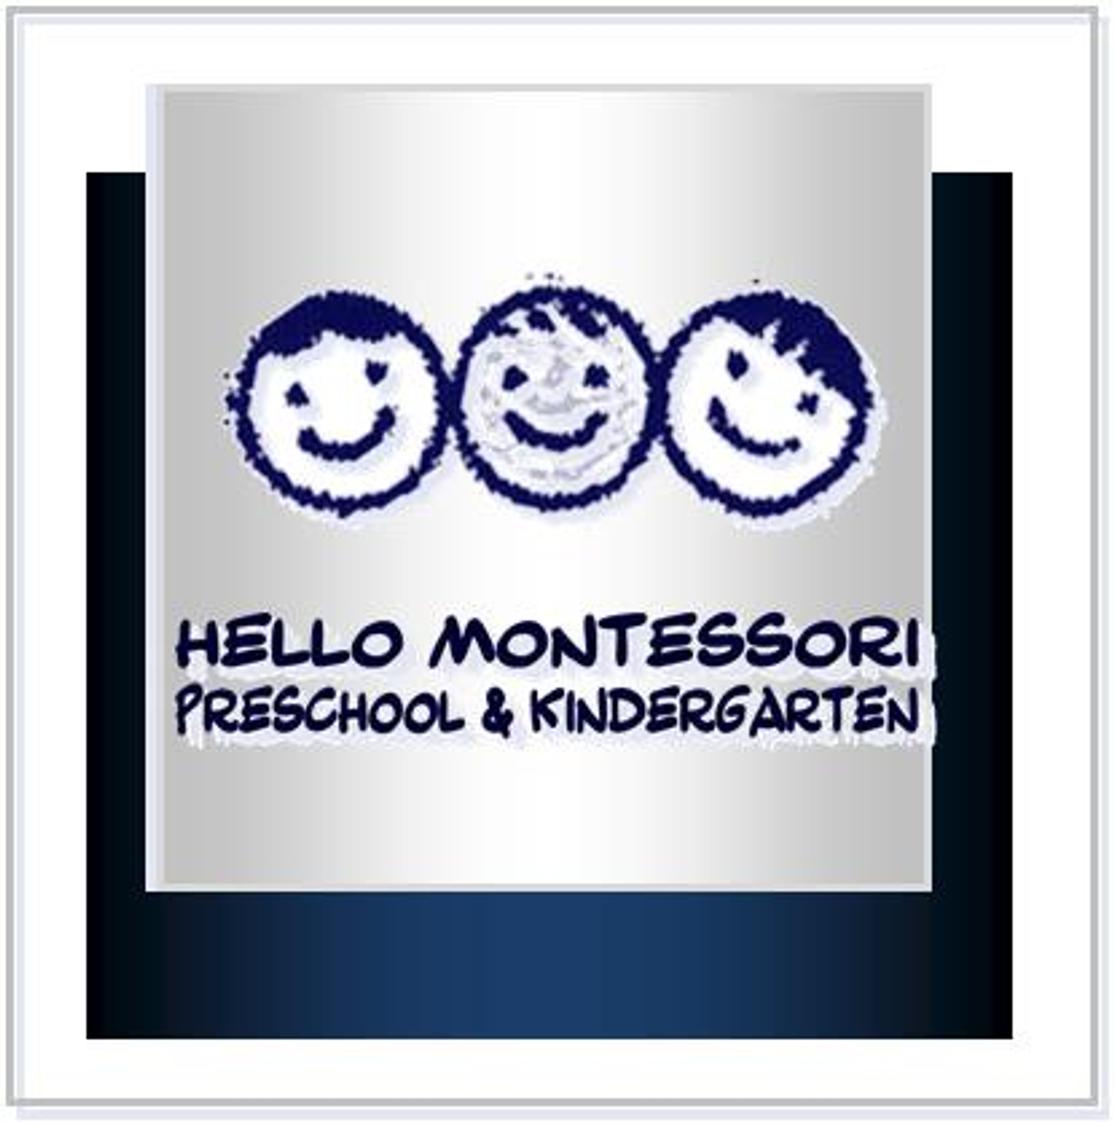 Hello Montessori Preschool & Kindergarten Photo #1 - The Foundation for a Bright Future Starts at Hello.